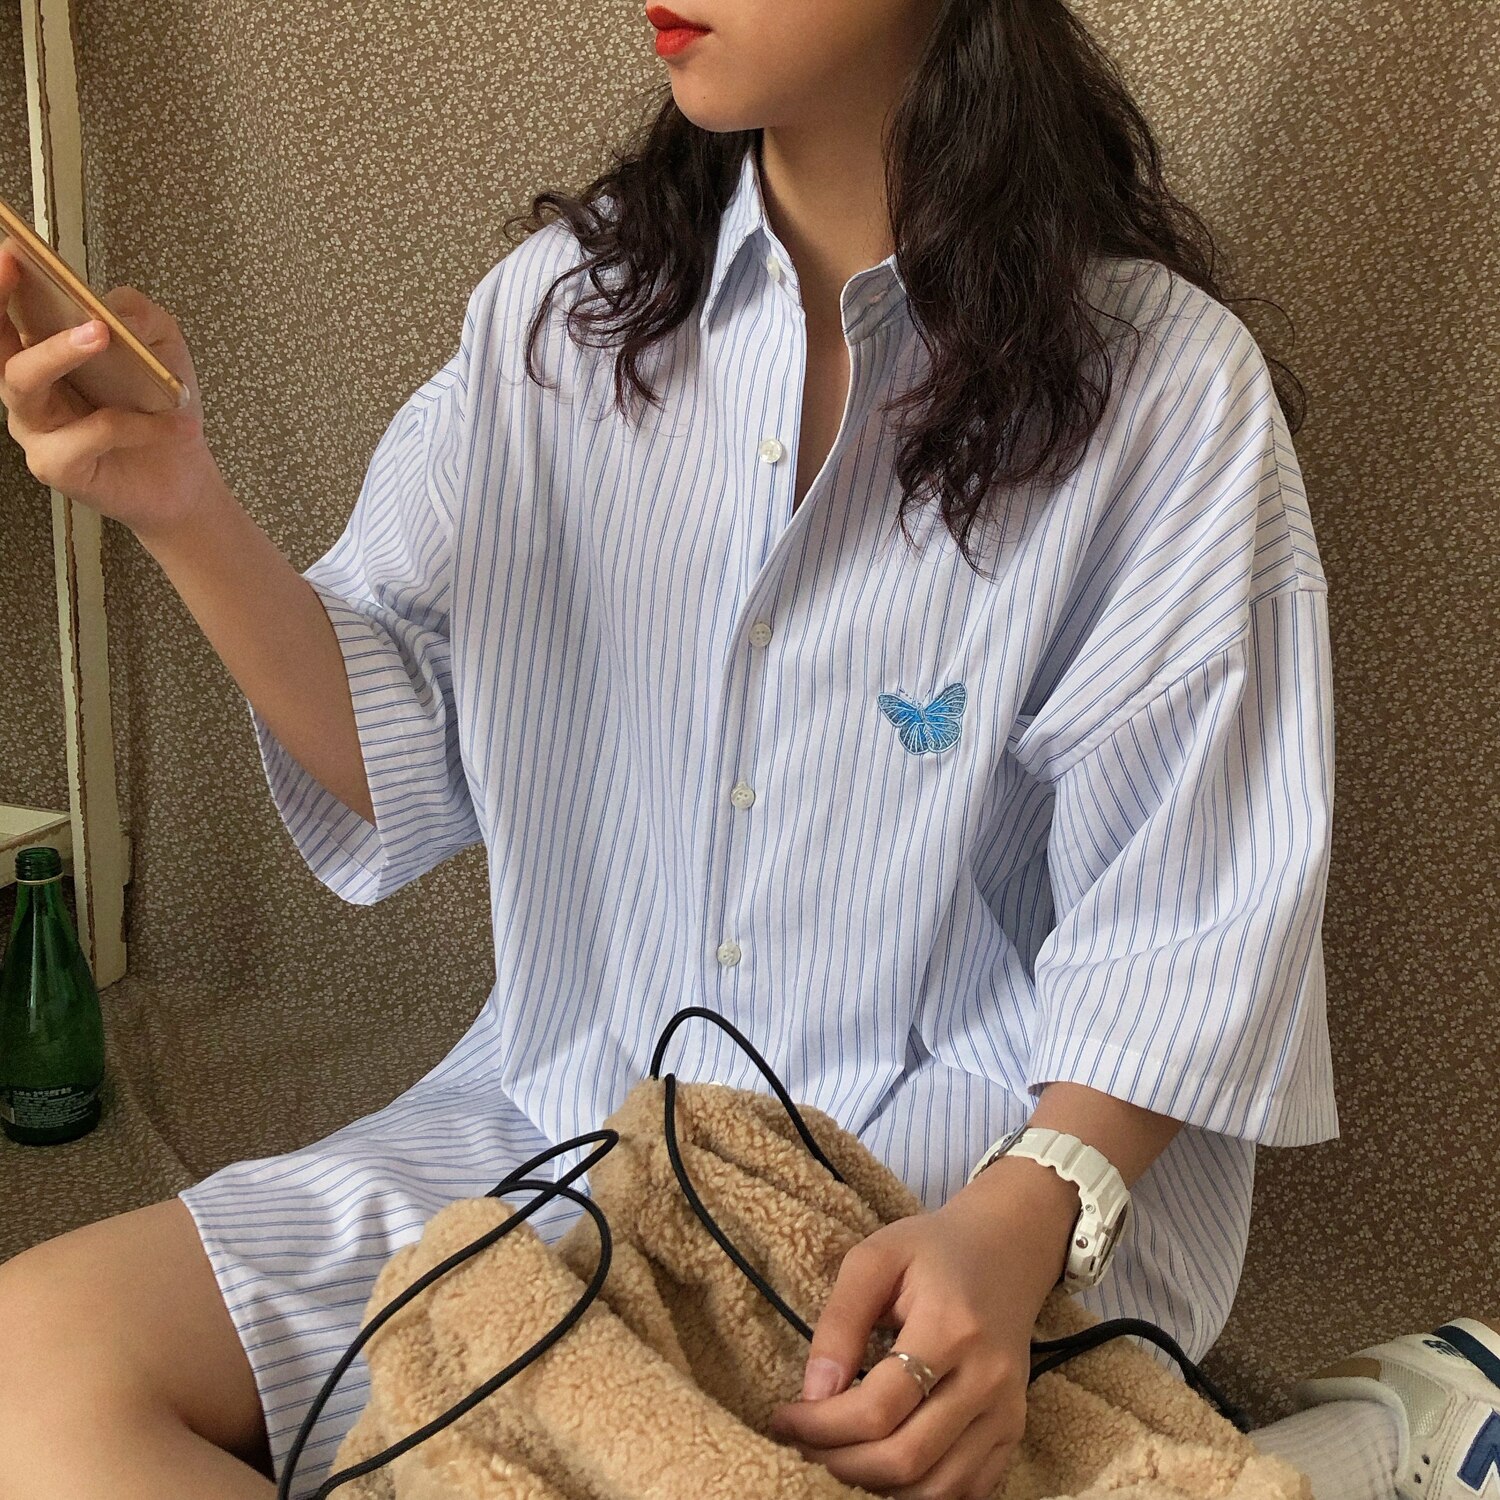 Iefb / herretøj sommerfuglbroderi koreansk stil skjorte afslappet par oversize stribet skjorte tidevandstøj 9 y 2669